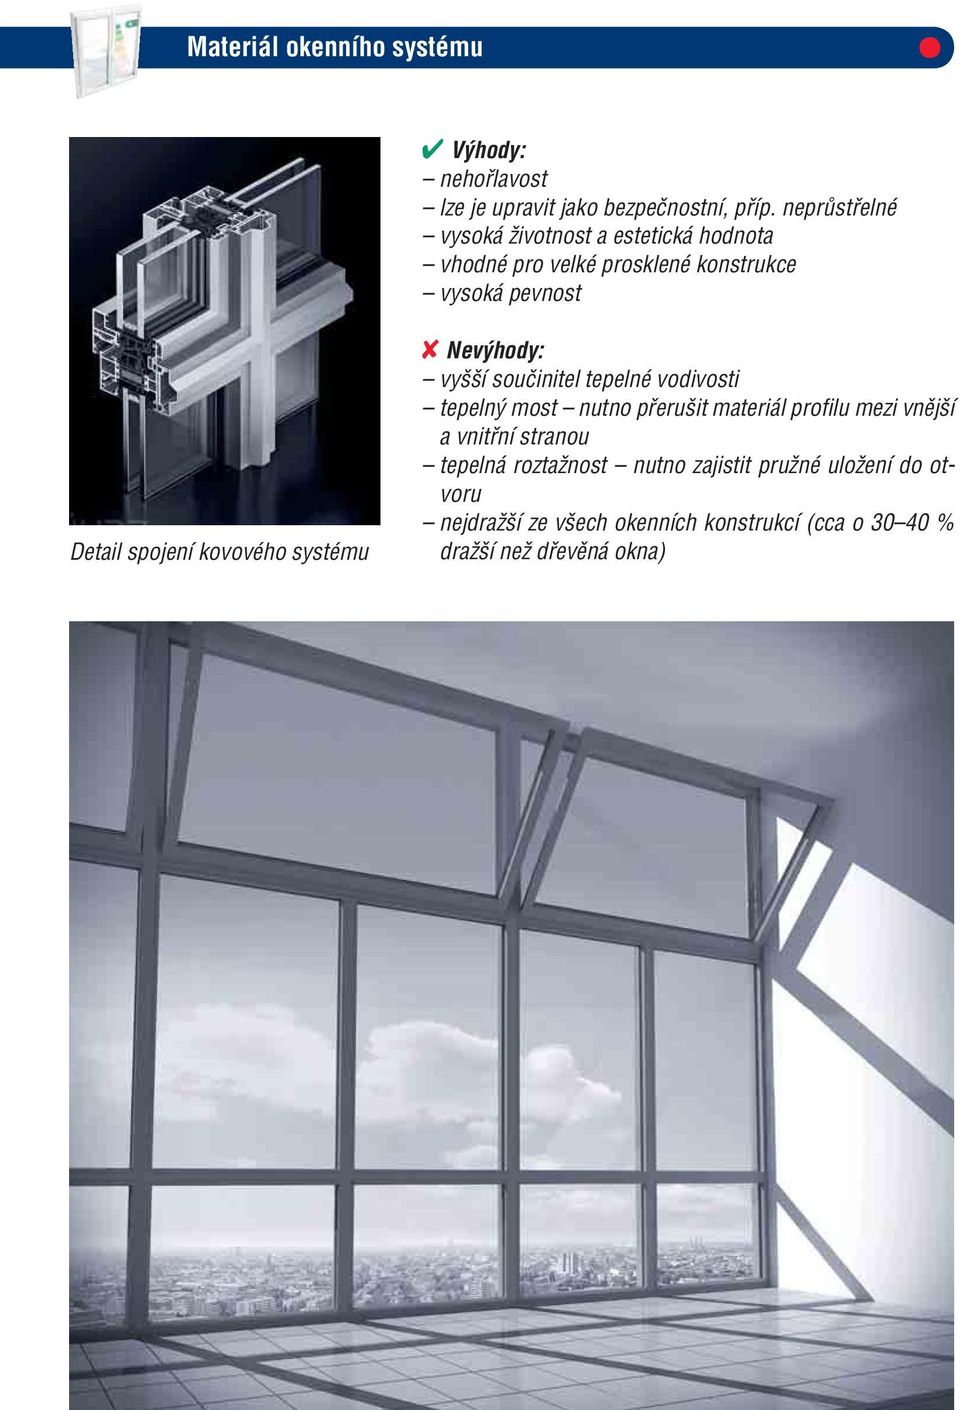 kovového systému Nevýhody: vyšší součinitel tepelné vodivosti tepelný most nutno přerušit materiál profilu mezi vnější